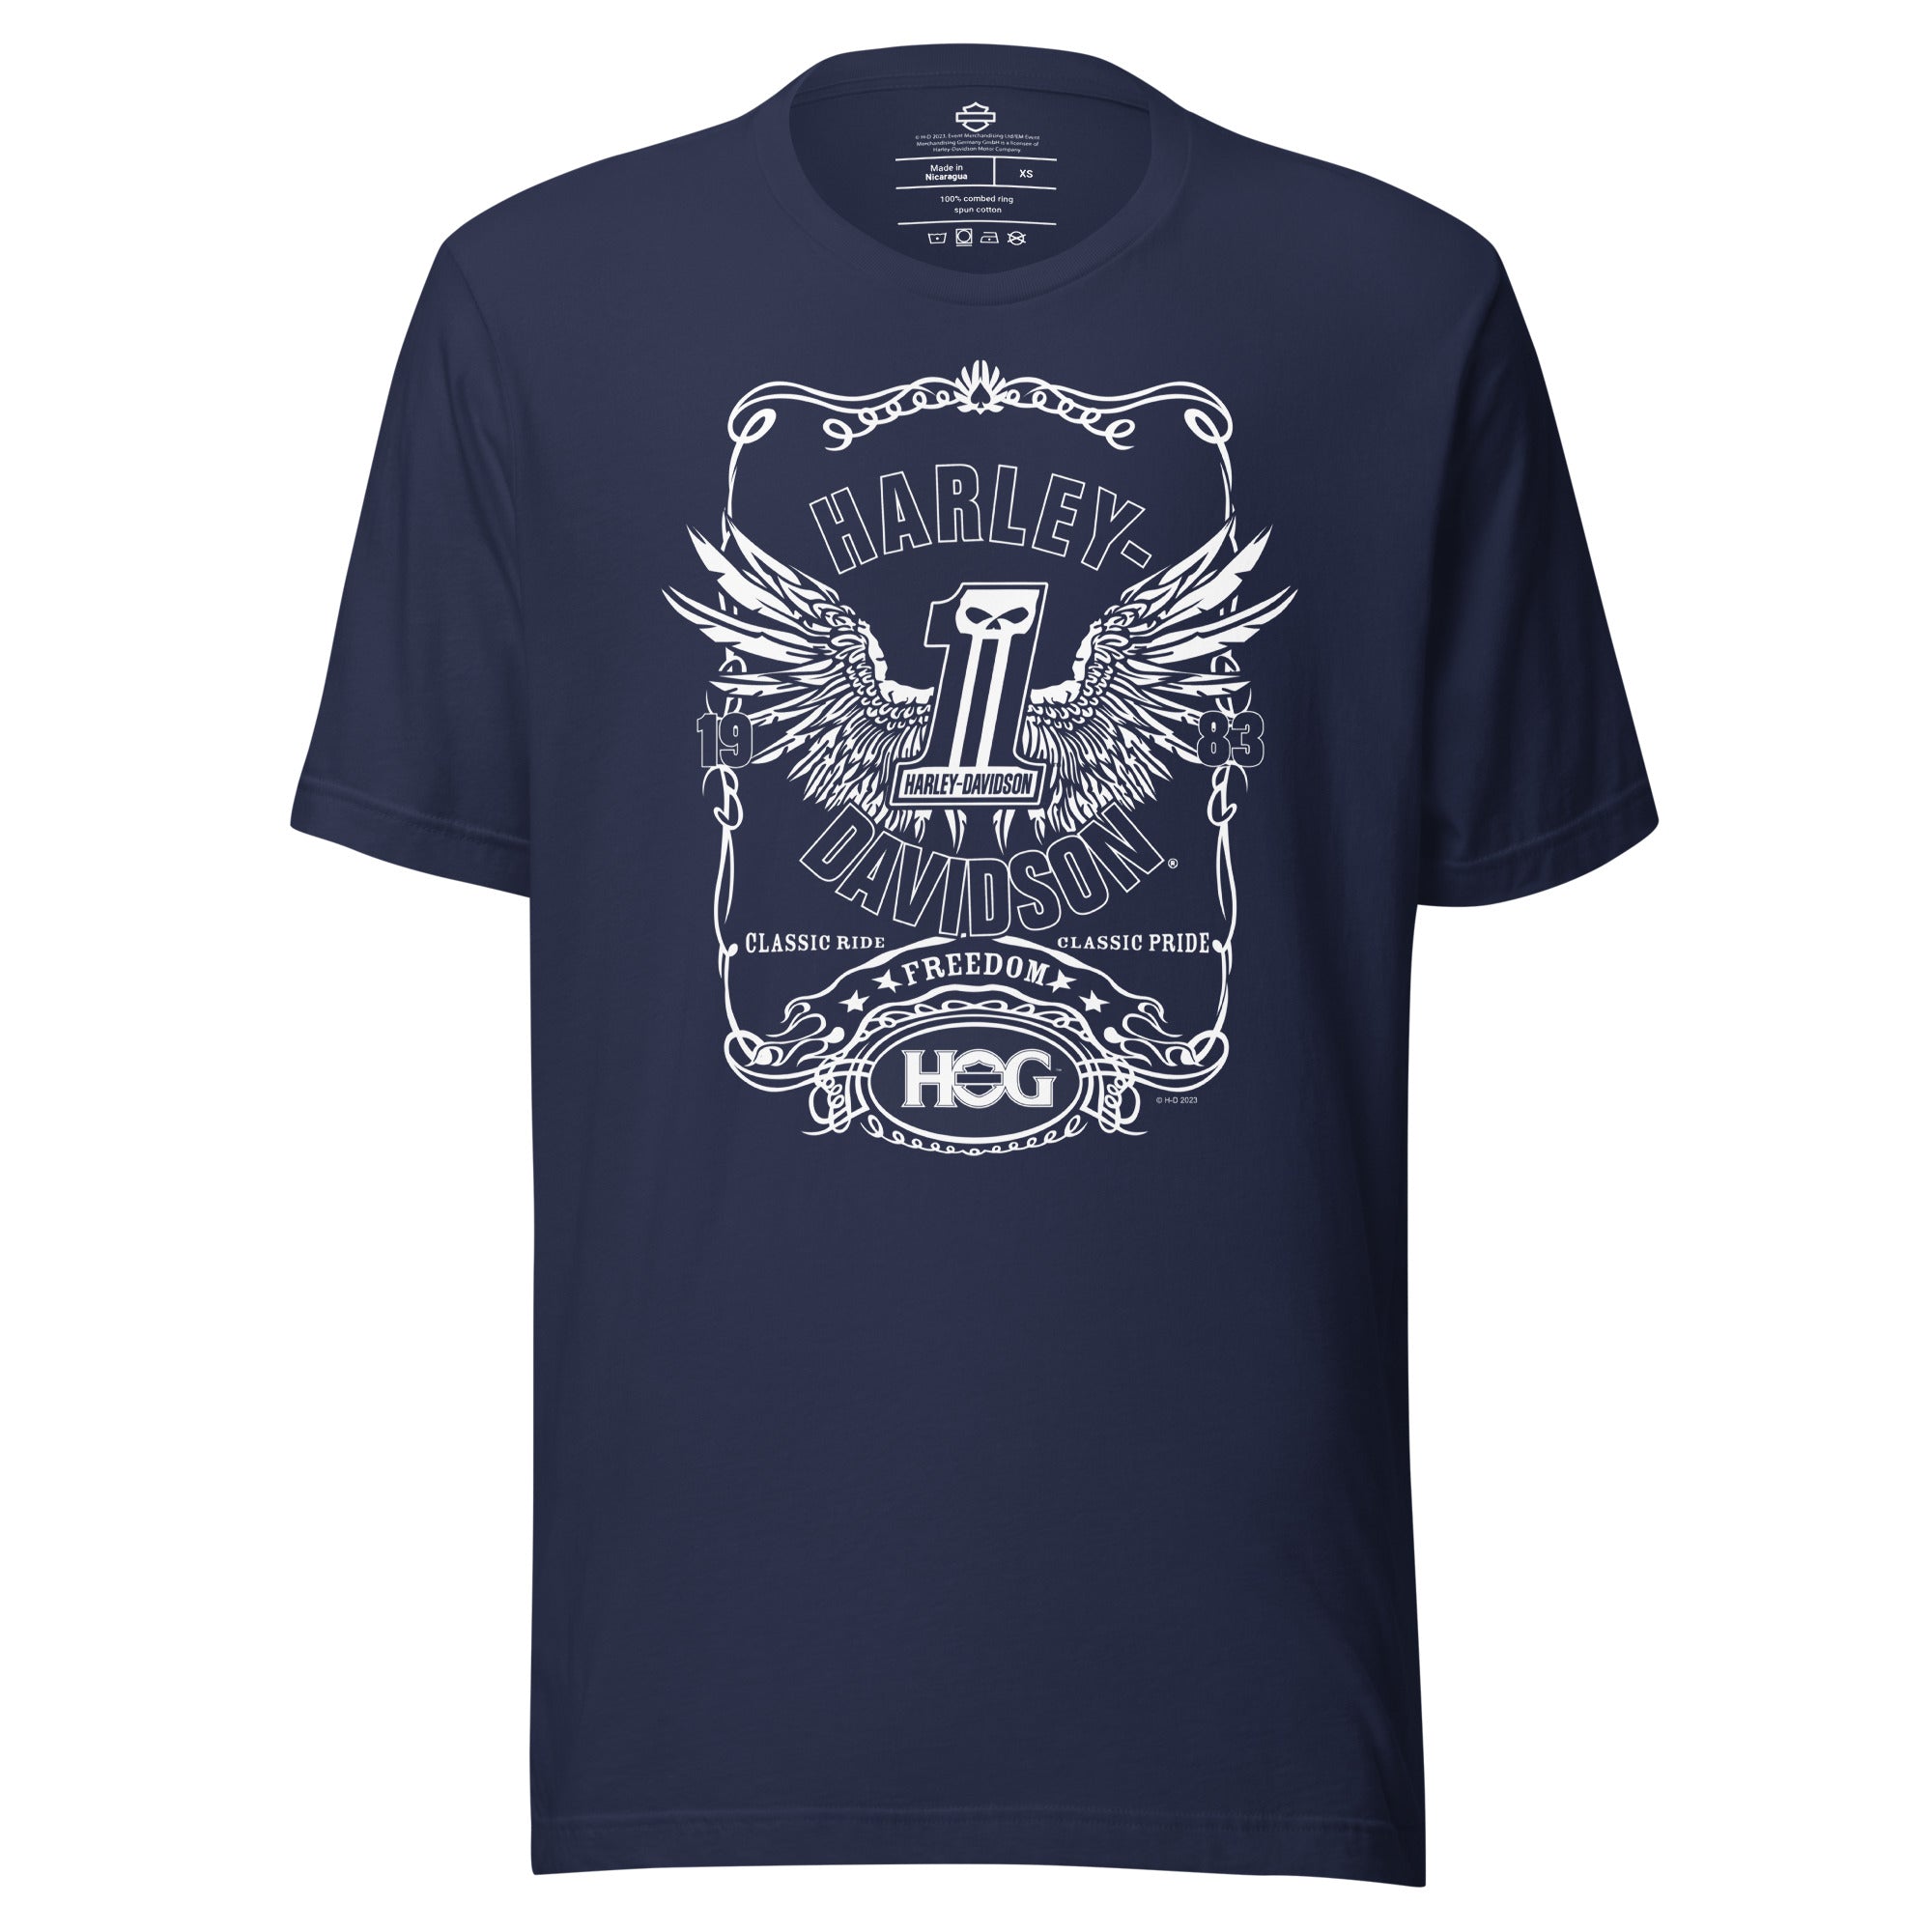 HOG Freedom Unisex T-Shirt